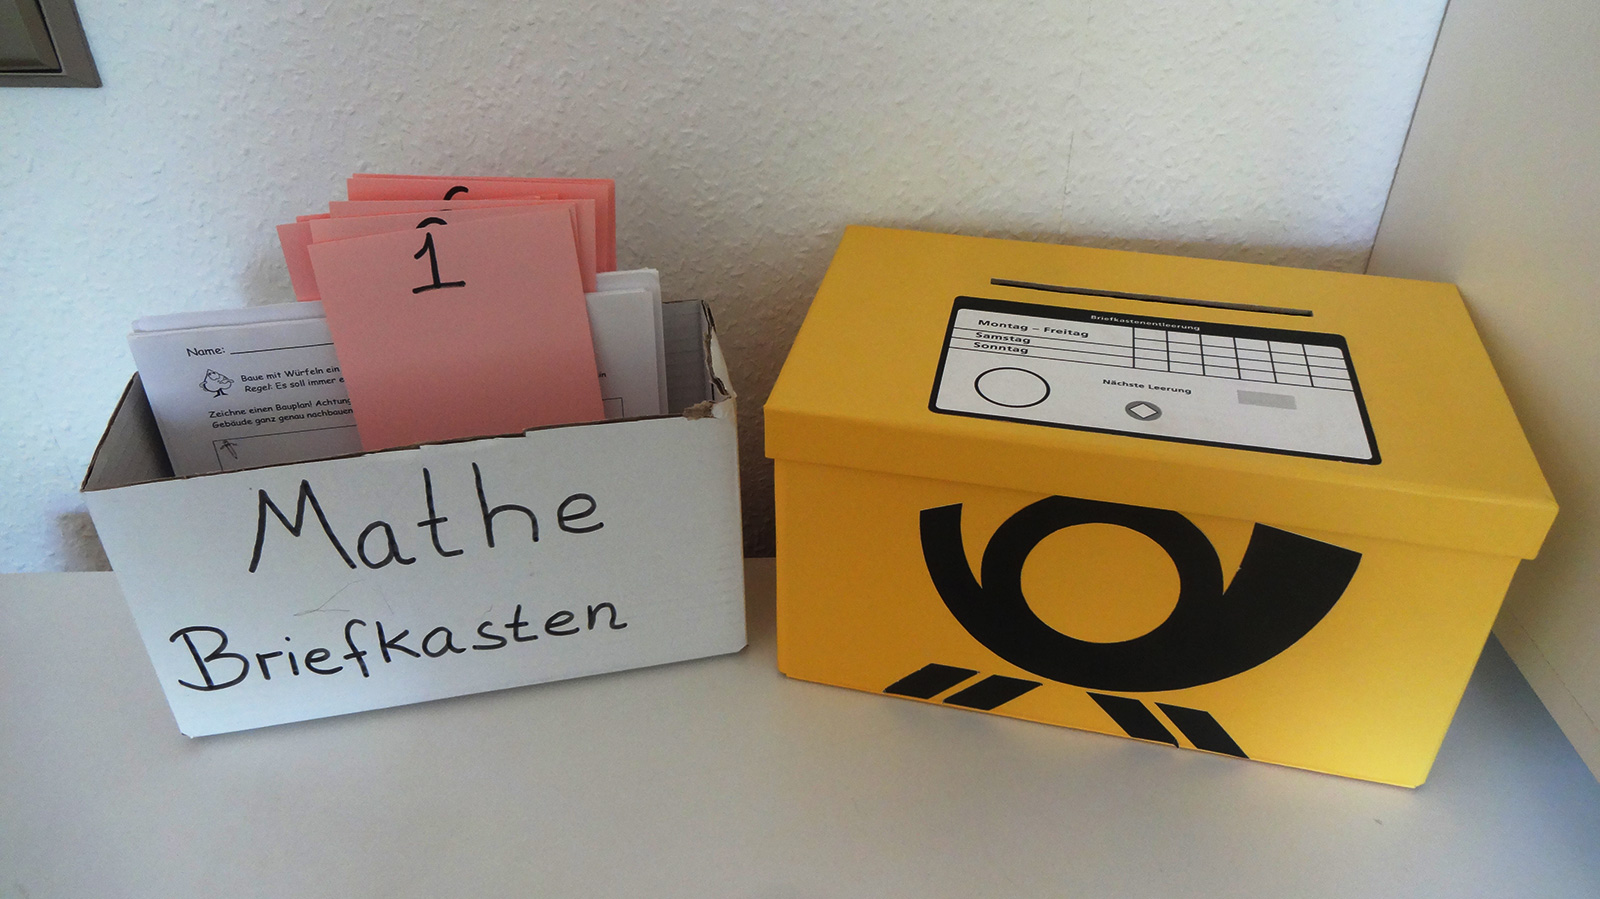 Links Pappkarton mit der Aufschrift „Mathe Briefkasten“. Im Karton befinden sich rosa Zettel mit Nummerierungen, dahinter jeweils Aufgabenblätter. Rechts daneben ein gelber Pappkarton mit Deckel und dem Logo der Deutschen Post. Im Deckel befindet sich ein Schlitz.